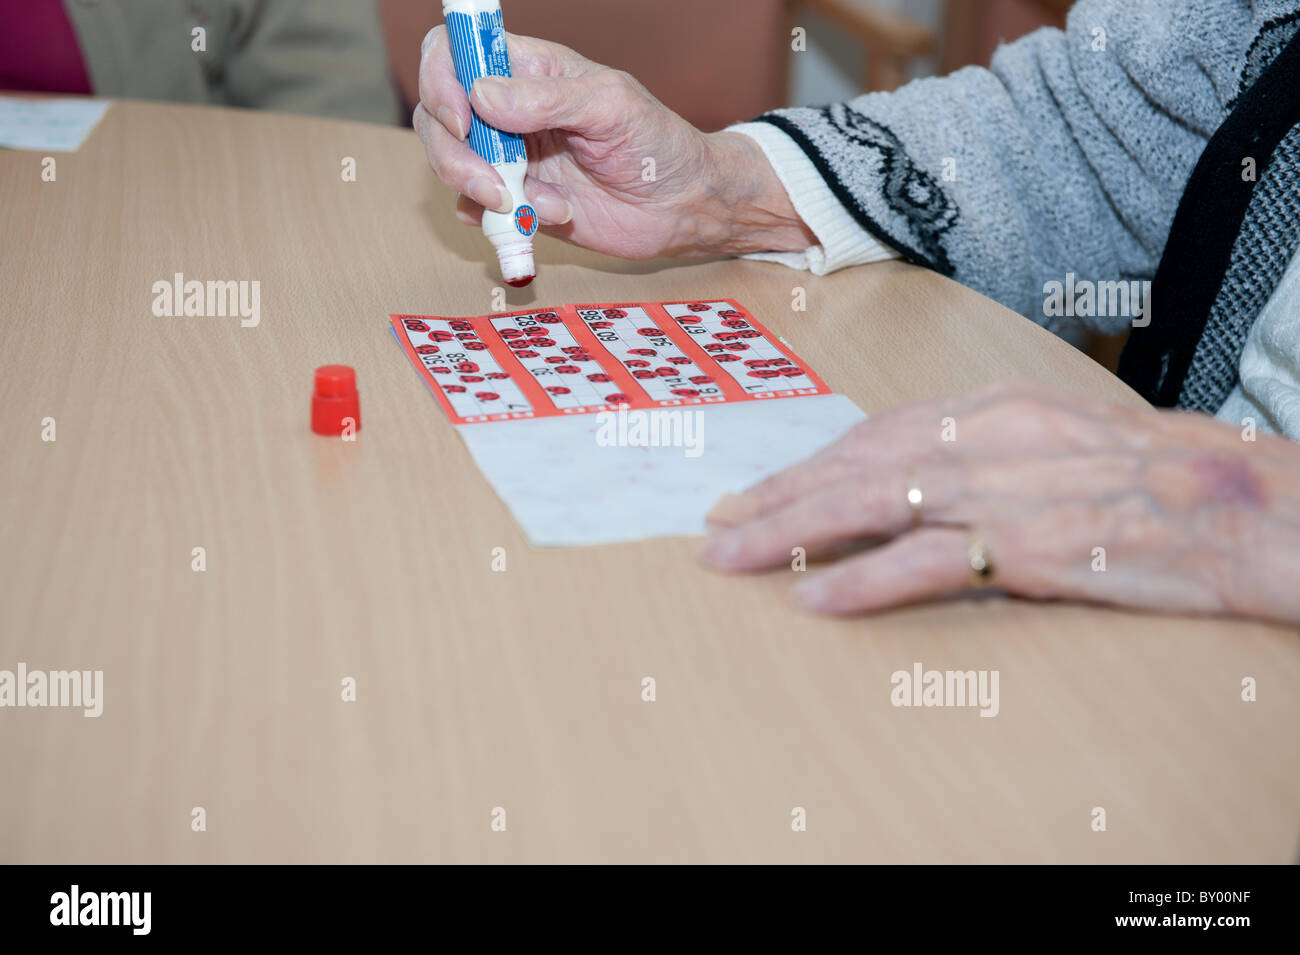 Cerrar la imagen de marca de la mano anciana tarjeta de bingo en la parte superior de la mesa. Foto de stock